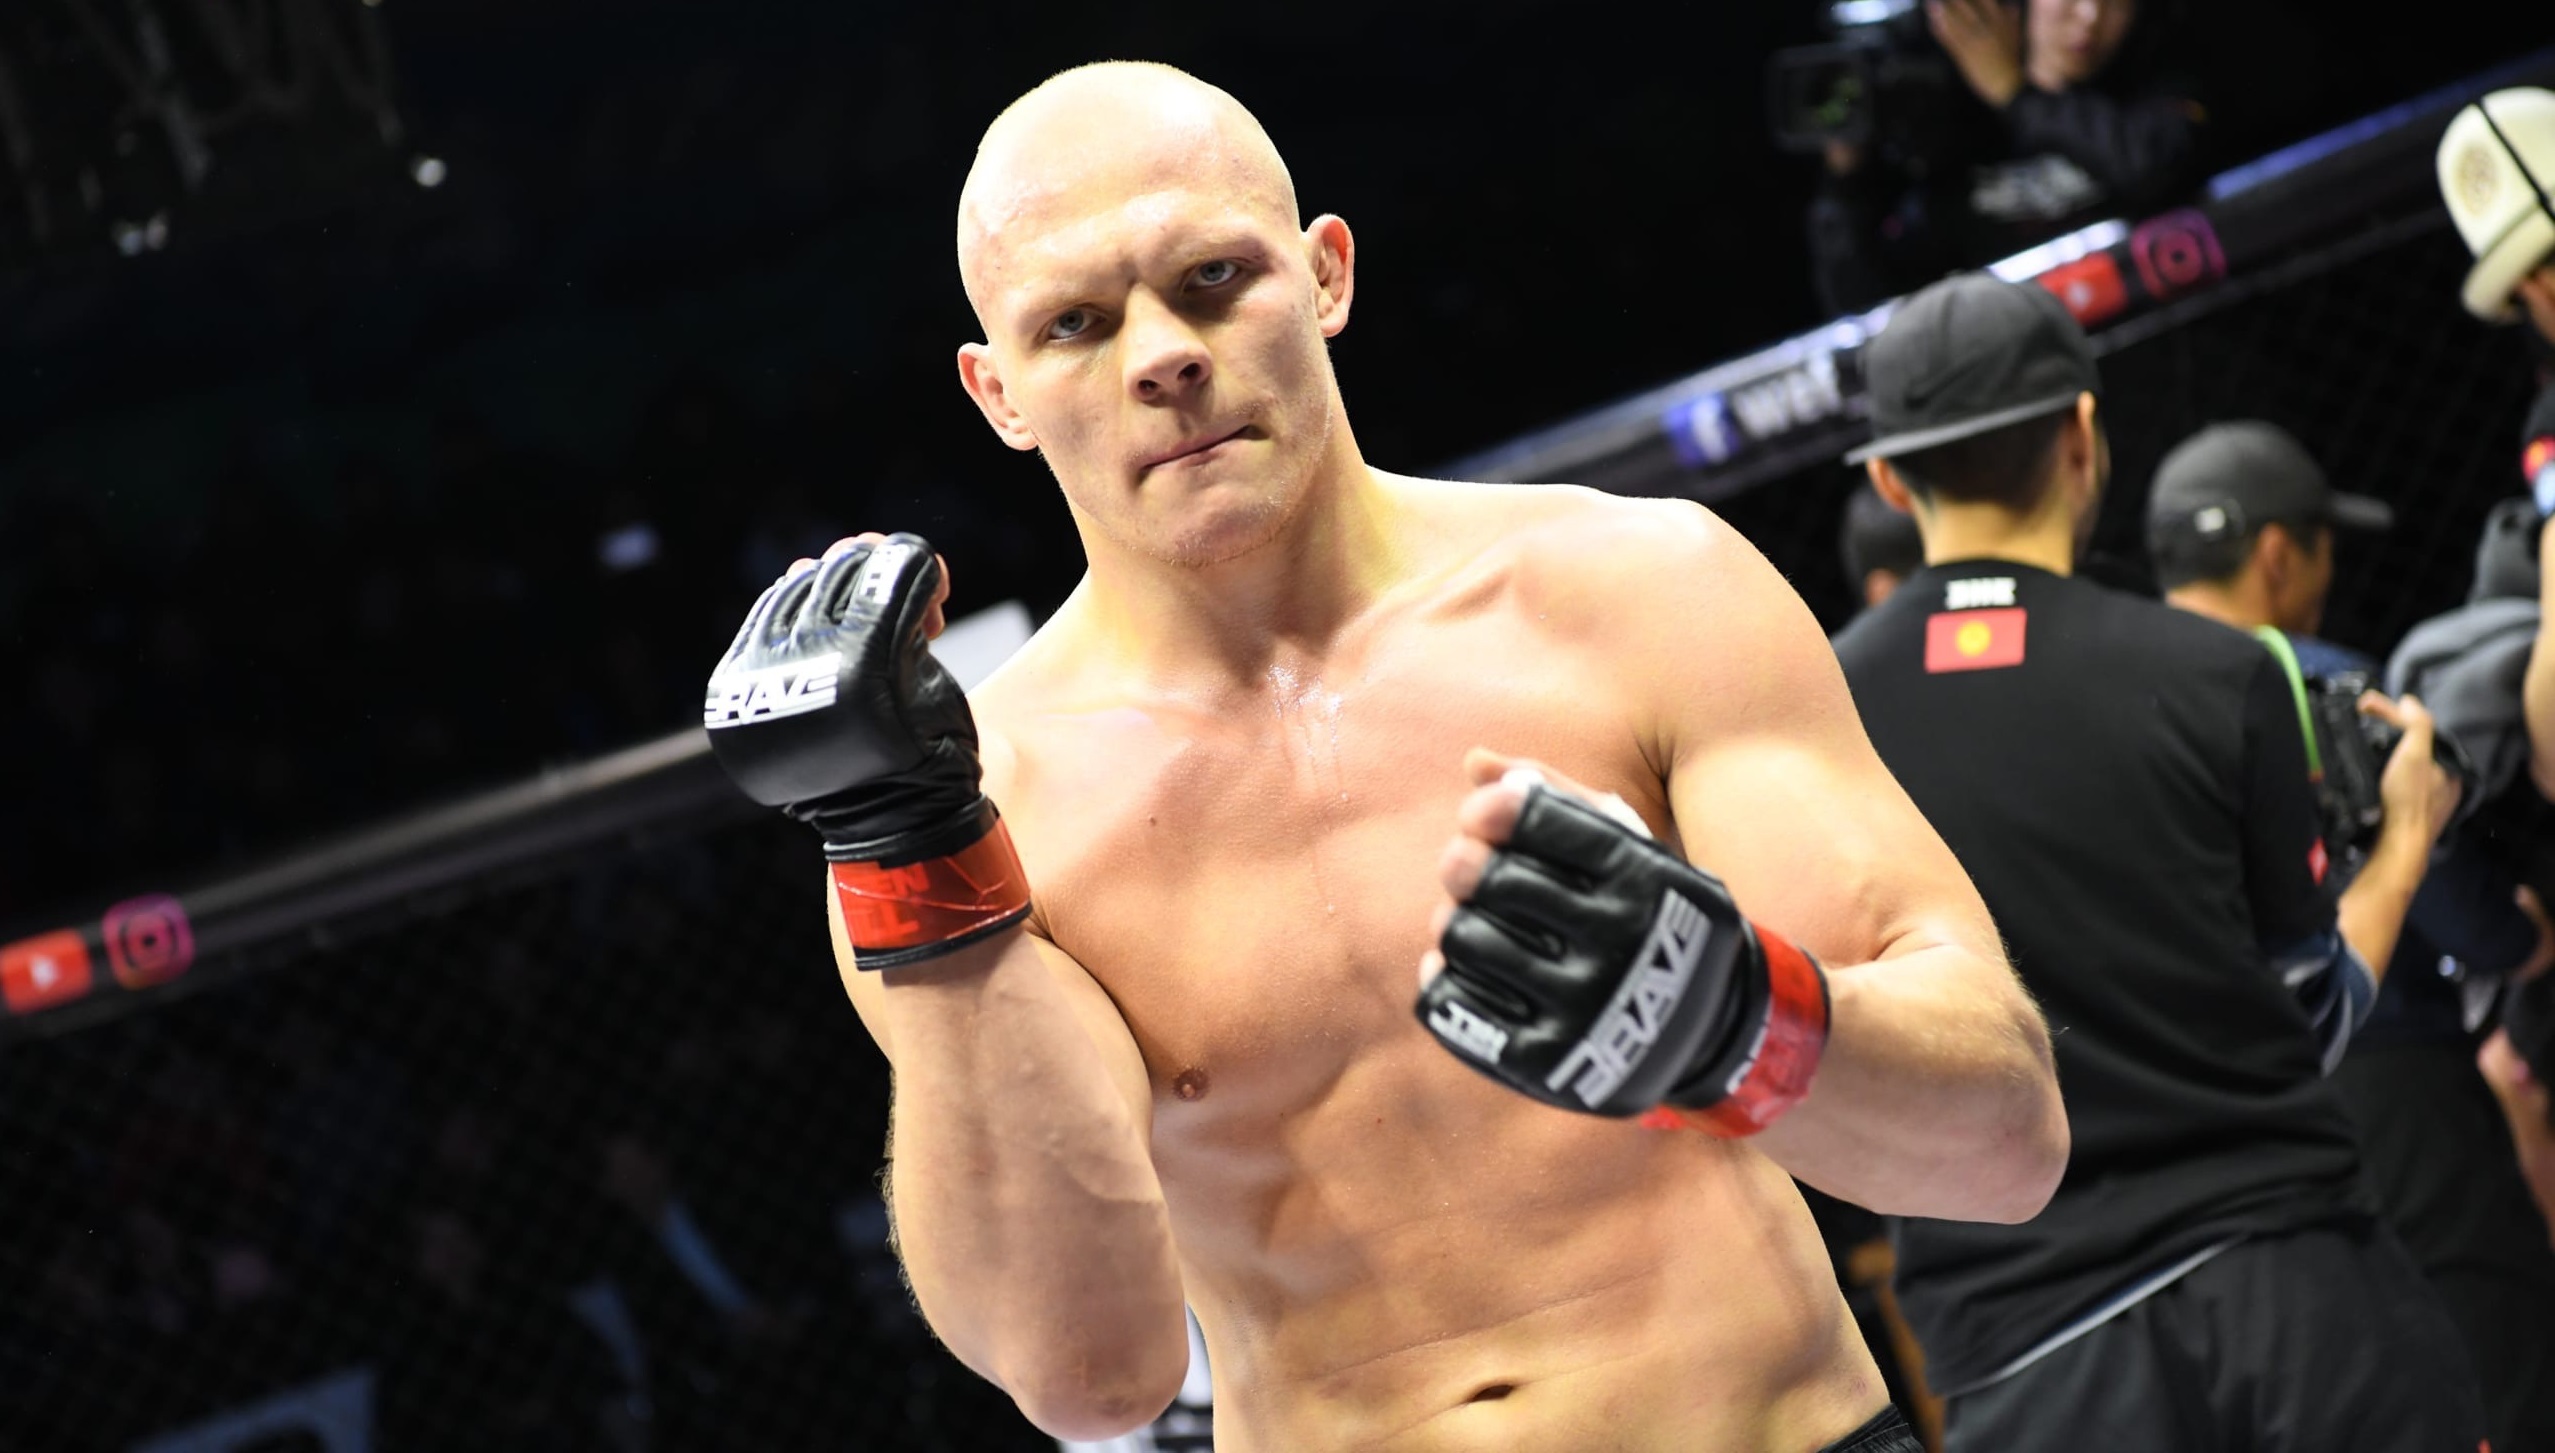 Узбекский нокаутер против экс-претендента на титул: подробности боя Гуськов – Оздемир на UFC Fight Night 226